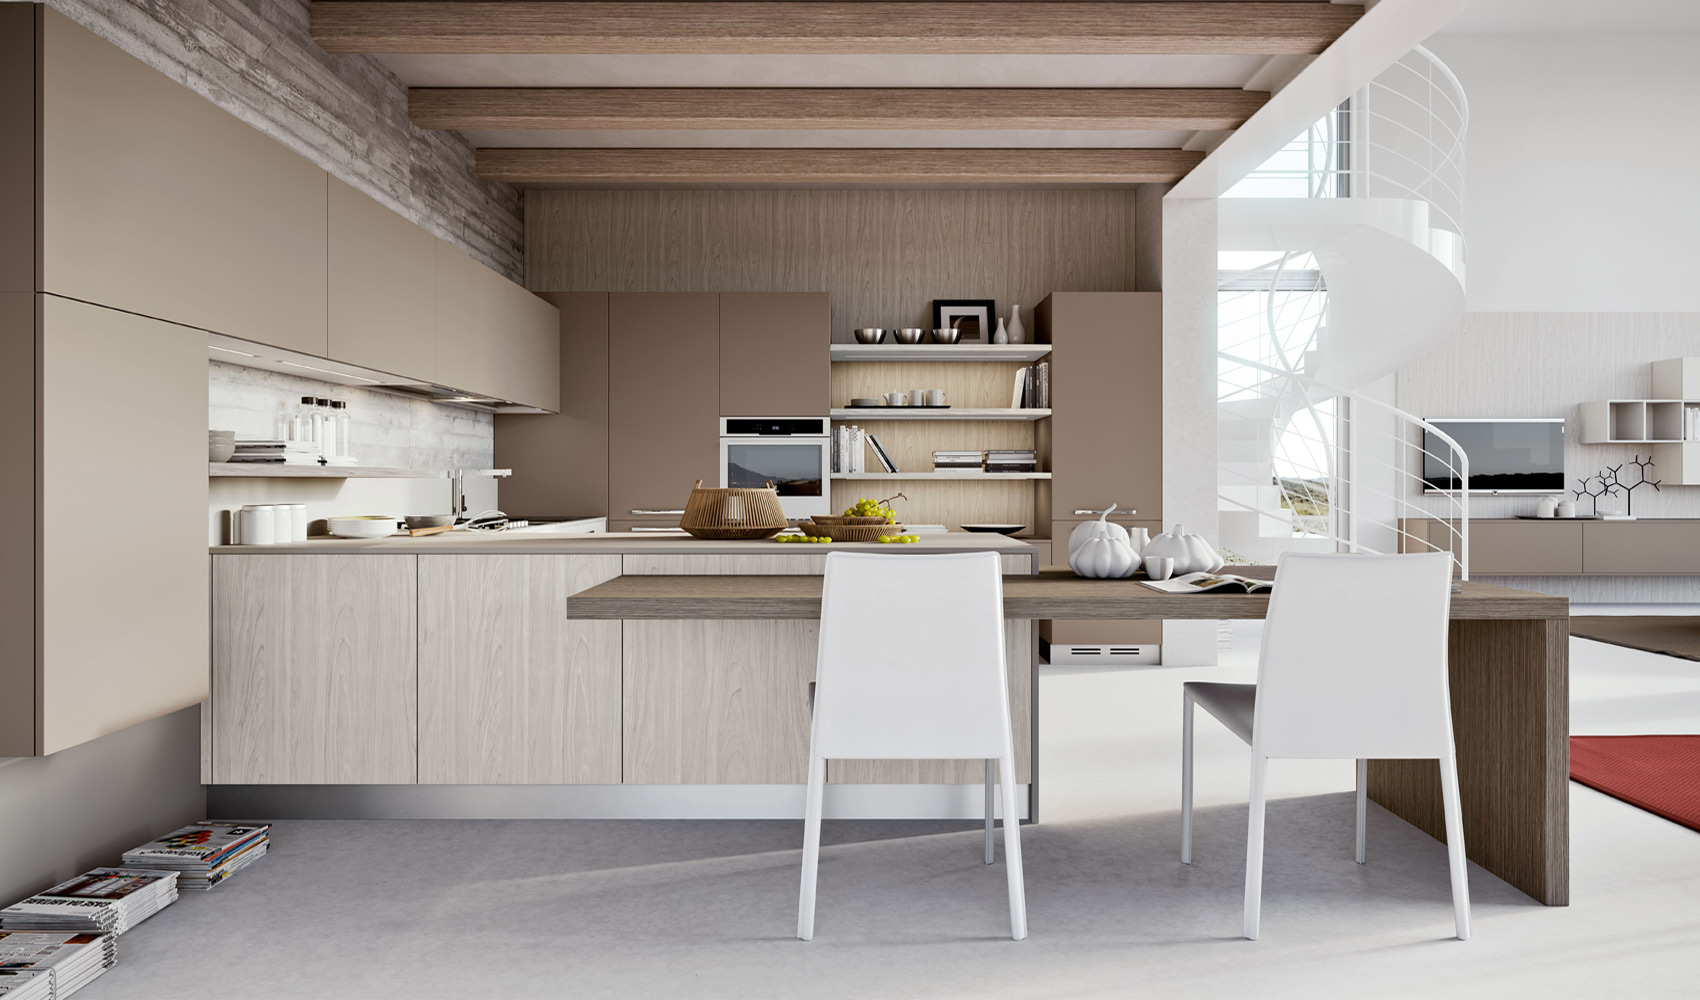 | Beige kitchenInterior Design Ideas.